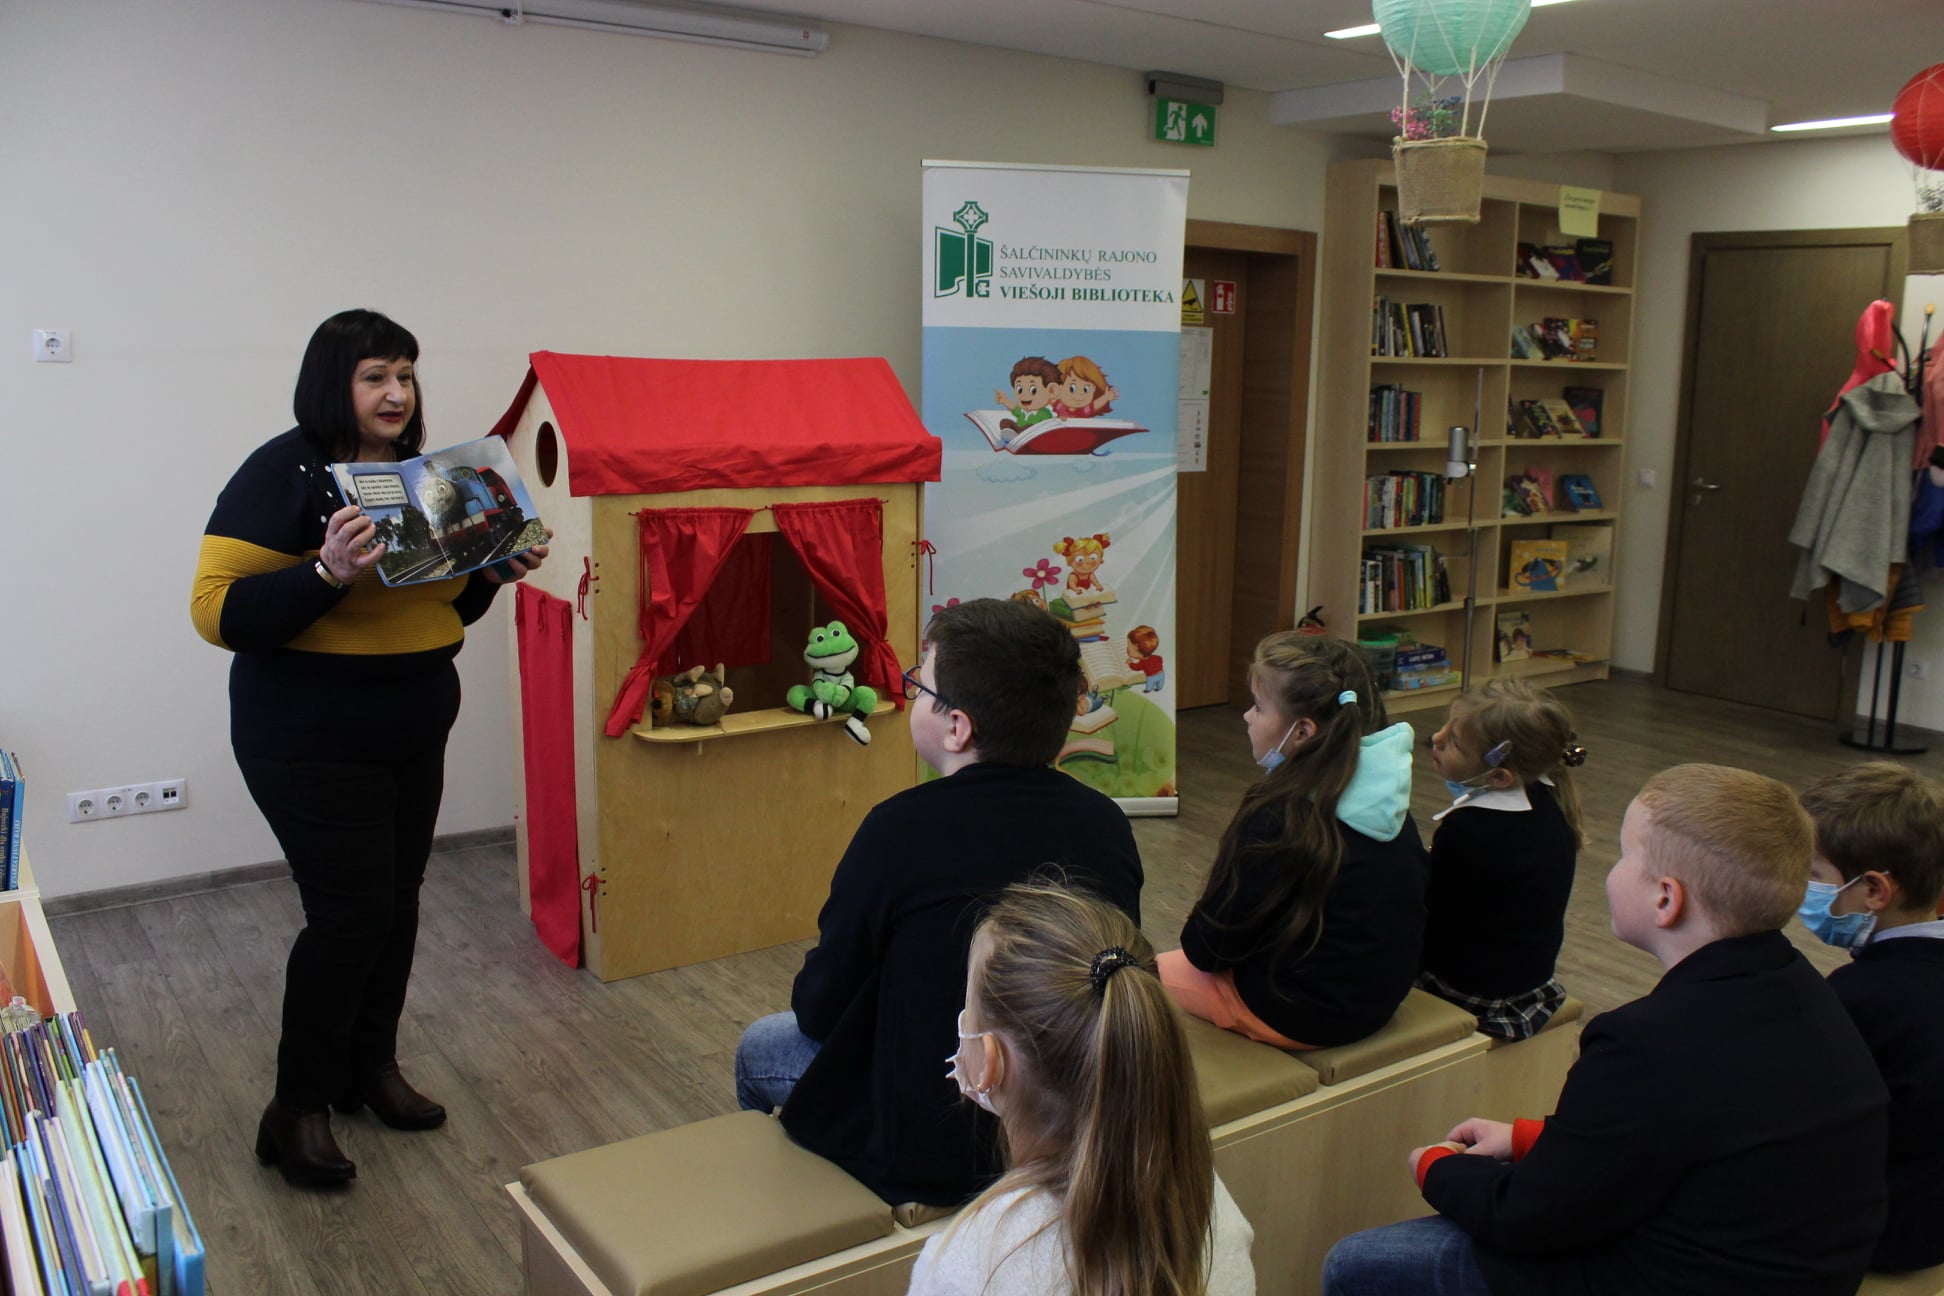 Šalčininkų rajono savivaldybės viešoji biblioteka Vaikų literatūros skyrius